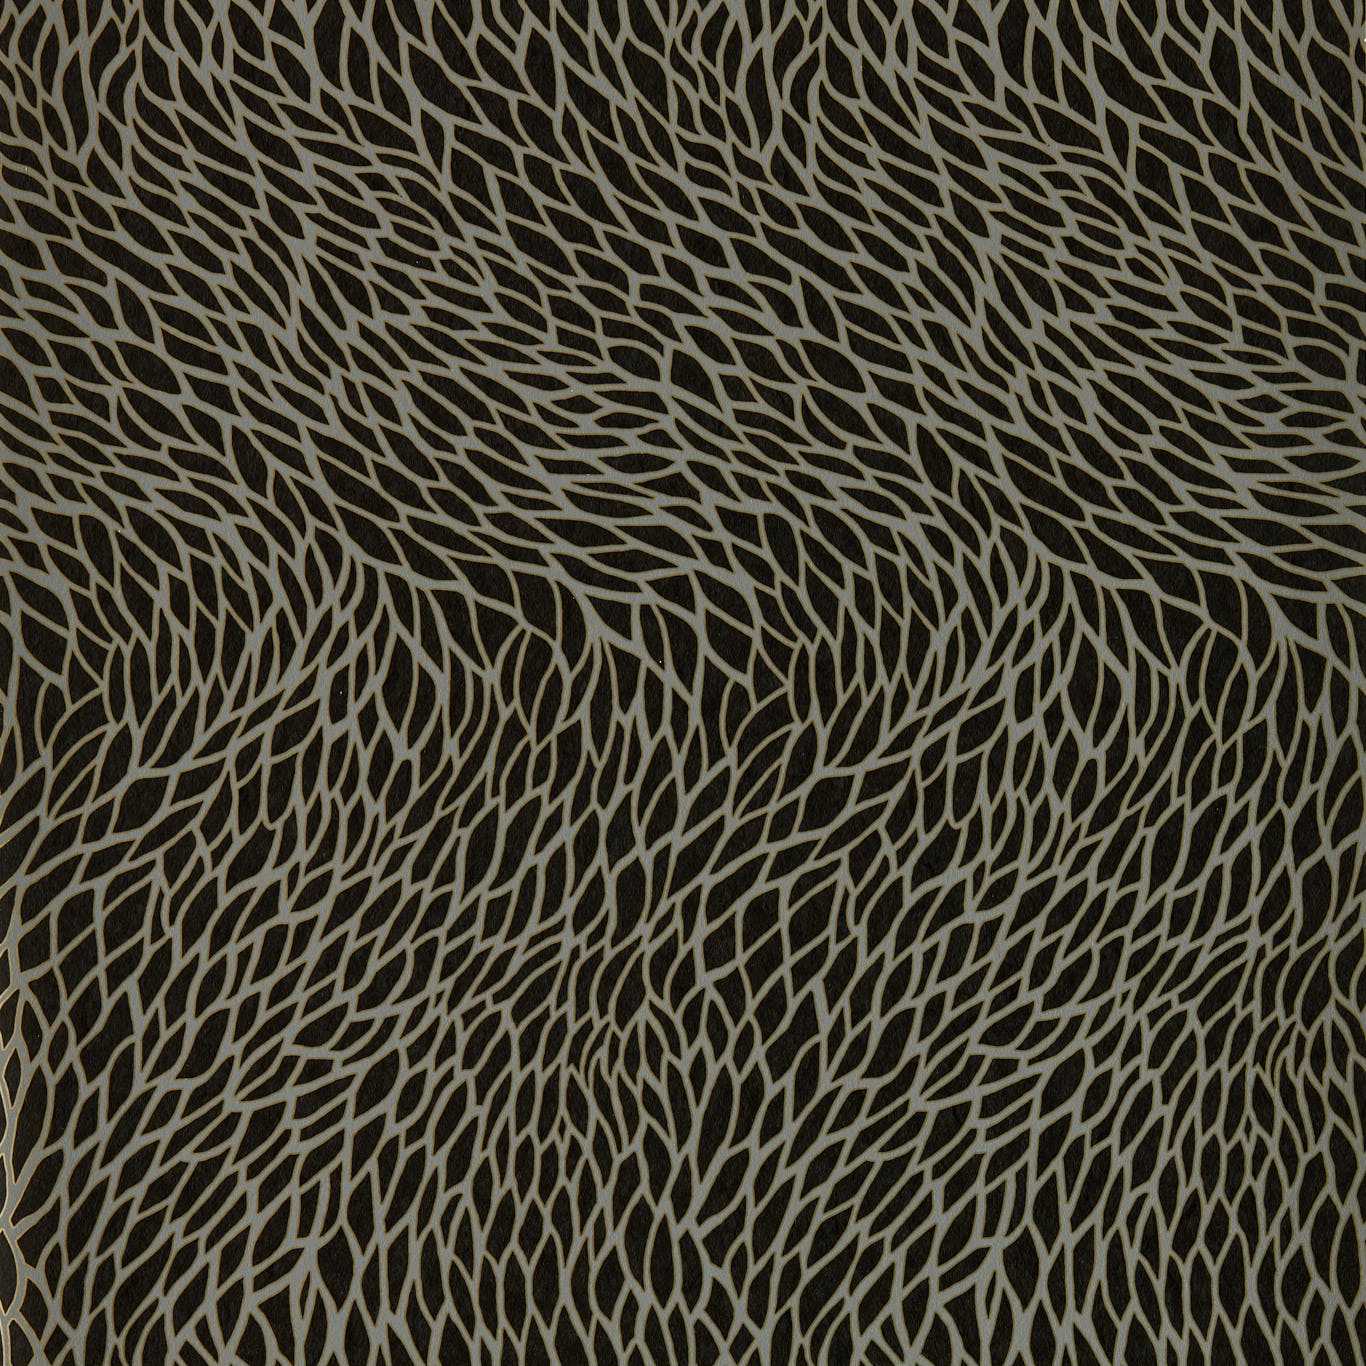 Corallino Noir Wallpaper W0166/02 by Clarke & Clarke